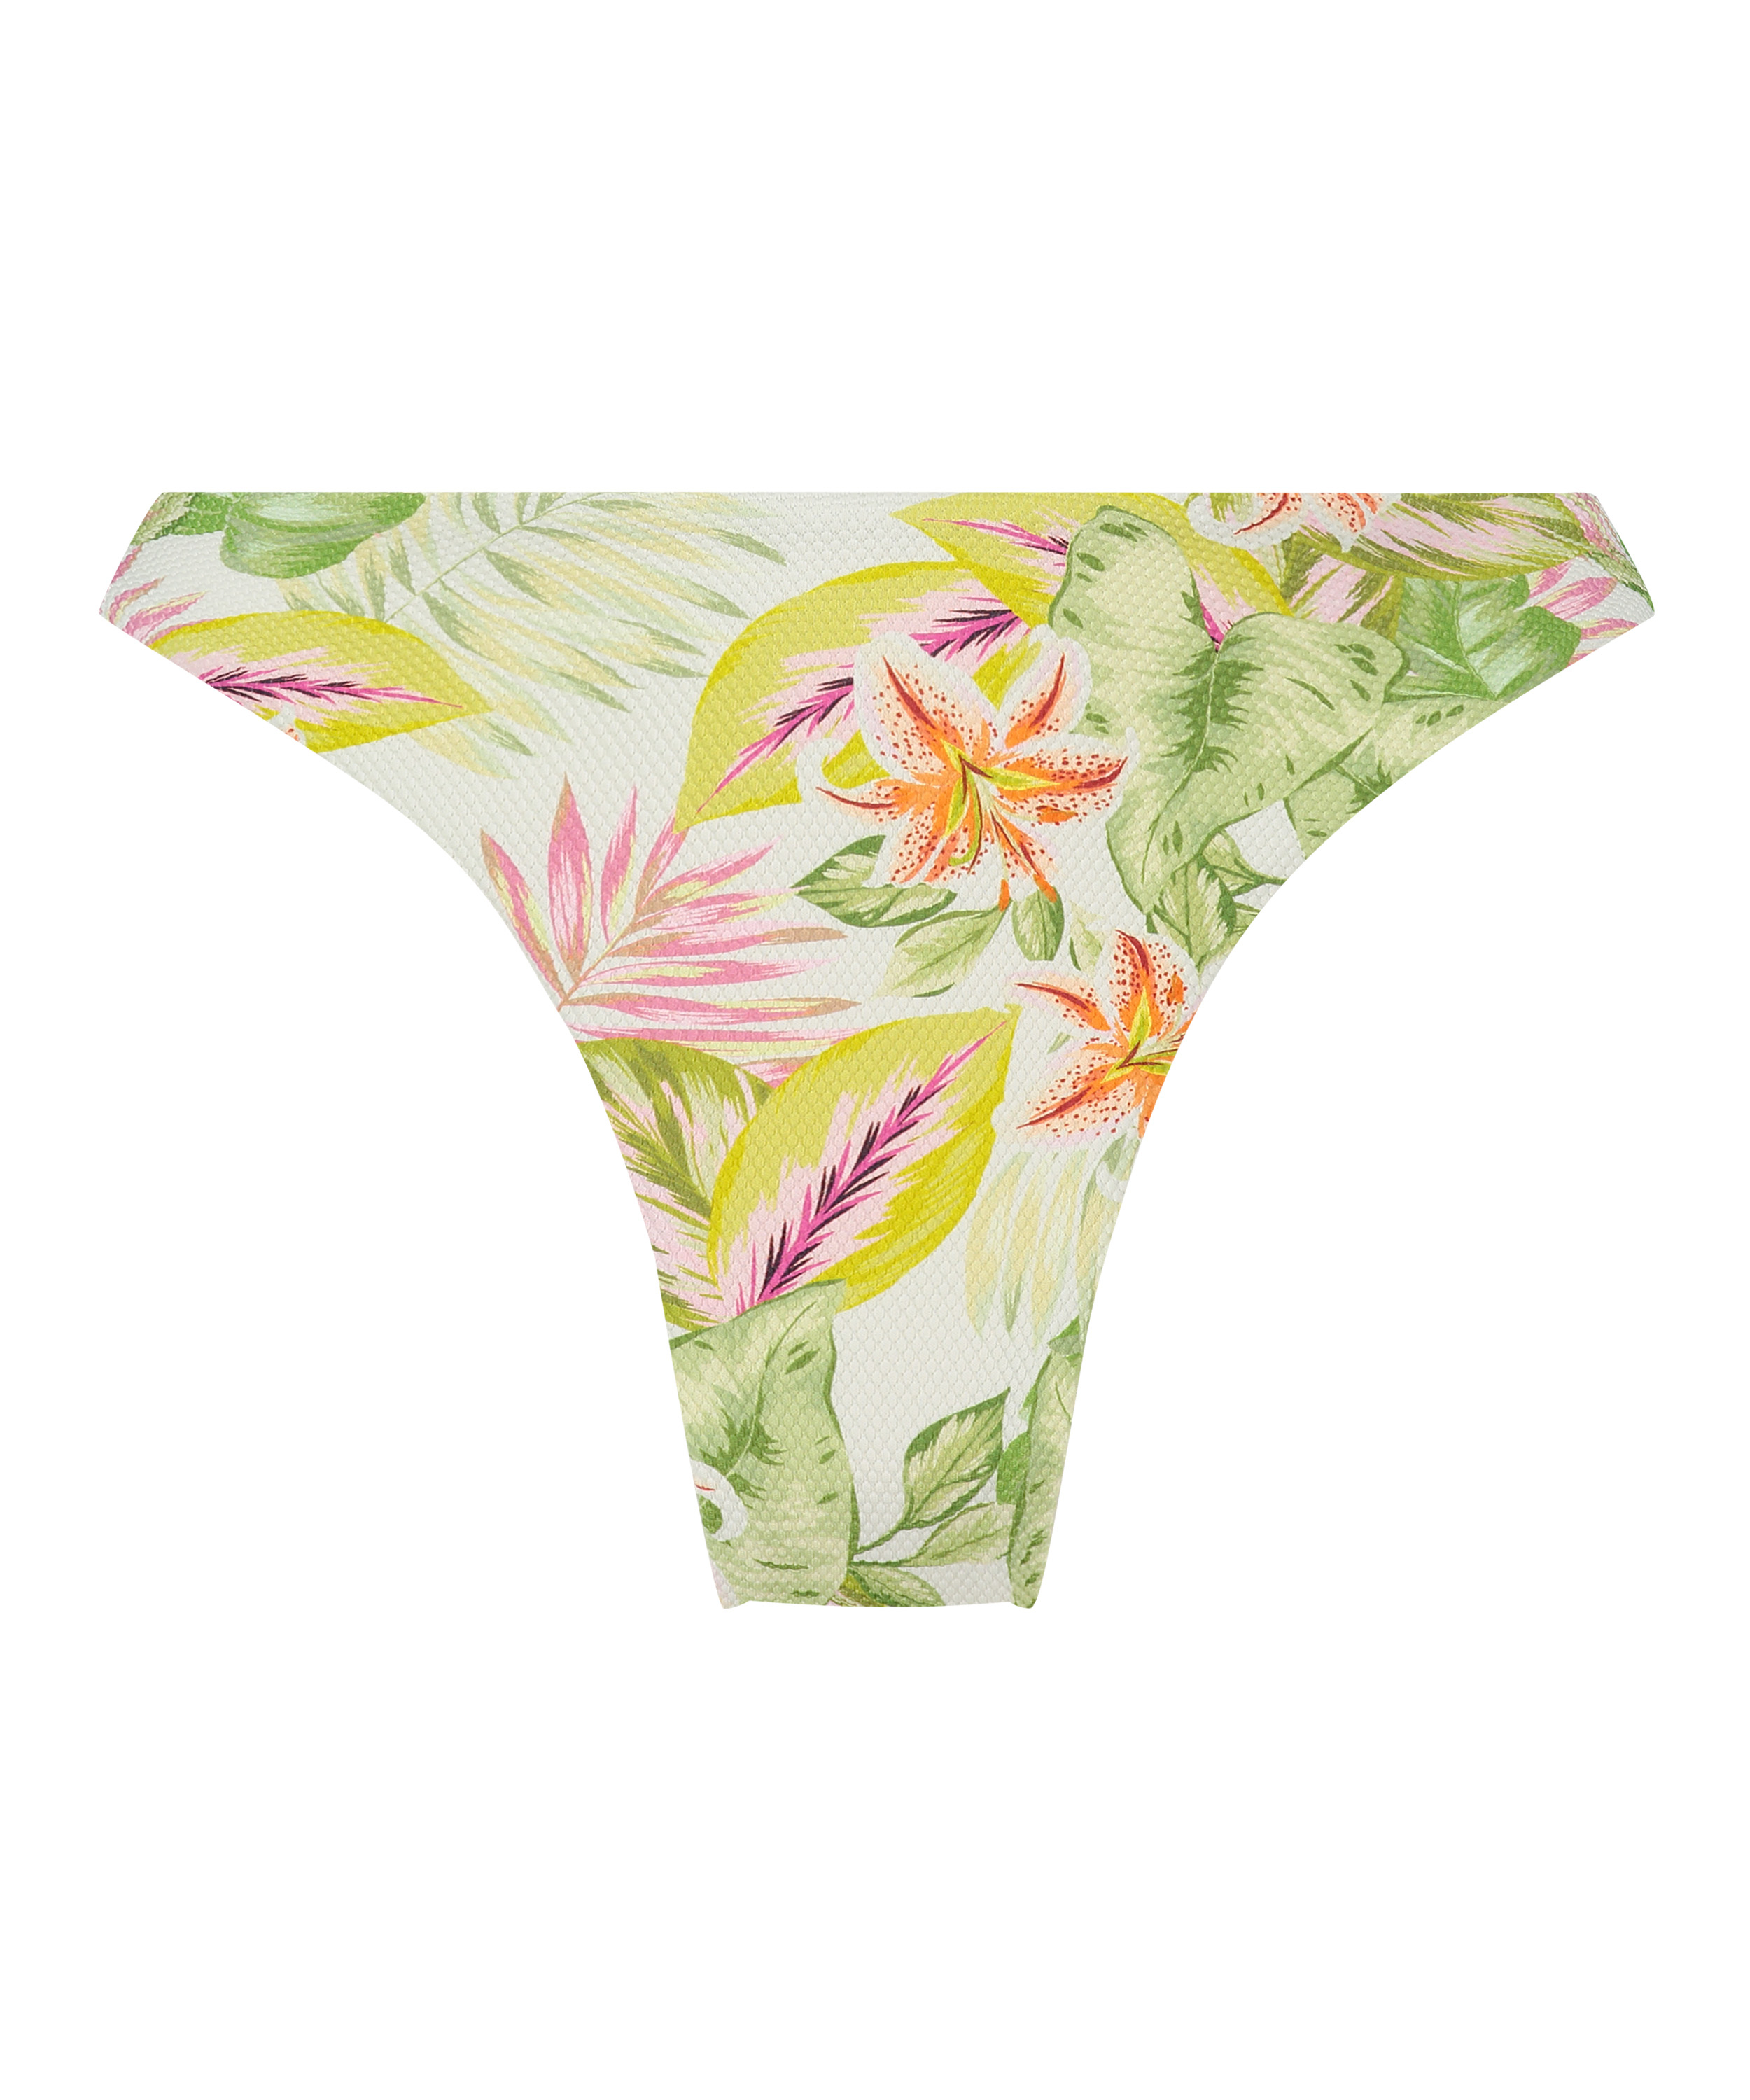 Tropics High-Leg Bikini Bottoms, White, main